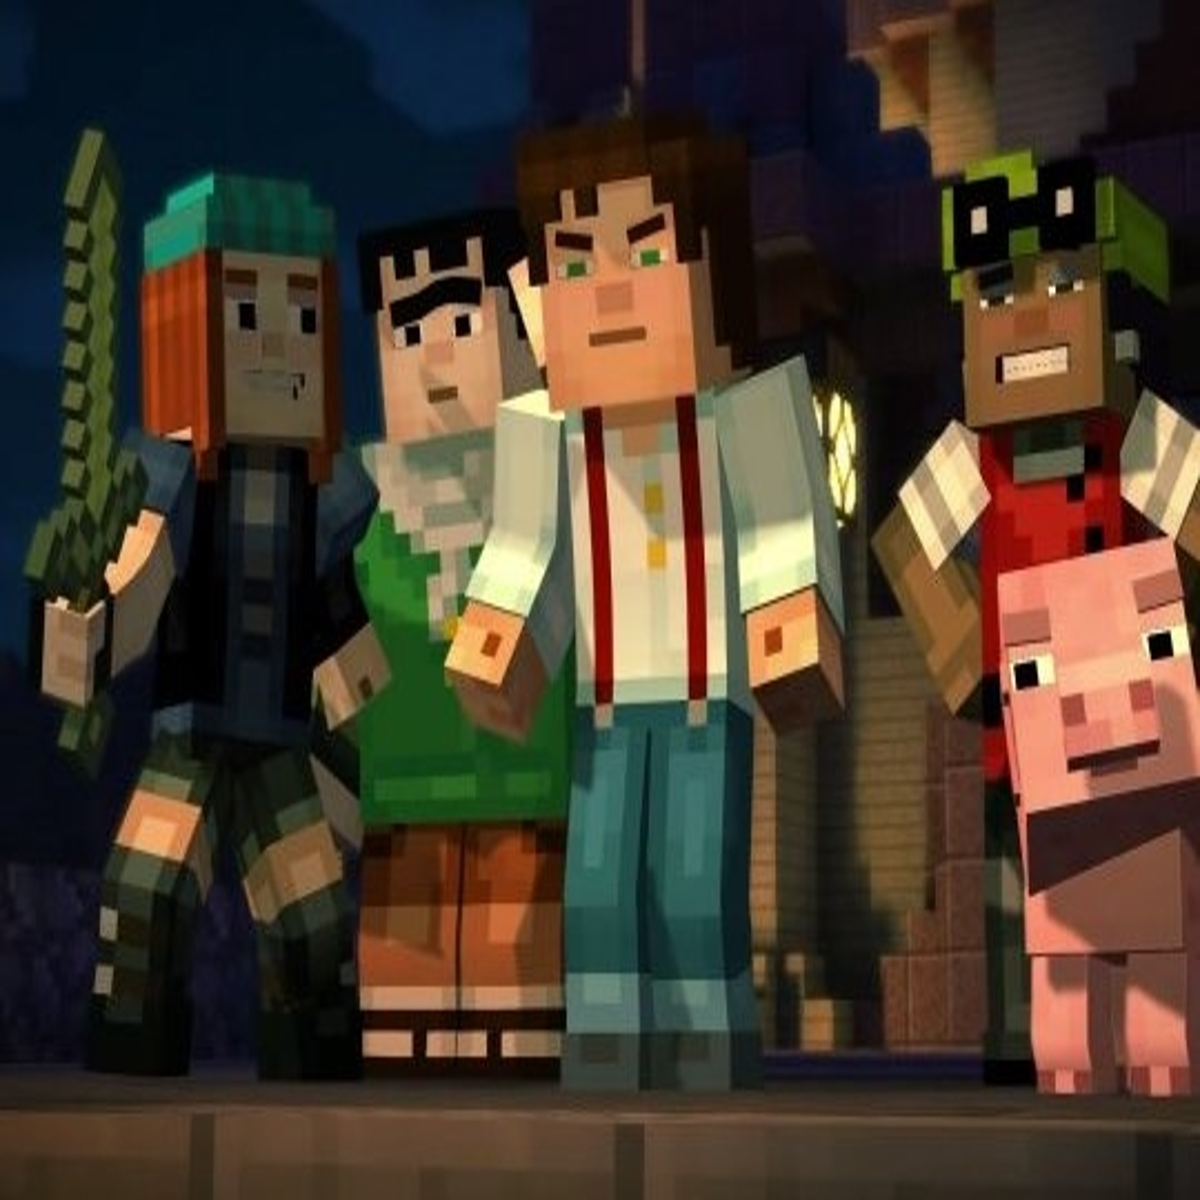 Episódio 2 de Minecraft Story Mode ganha lançamento surpresa